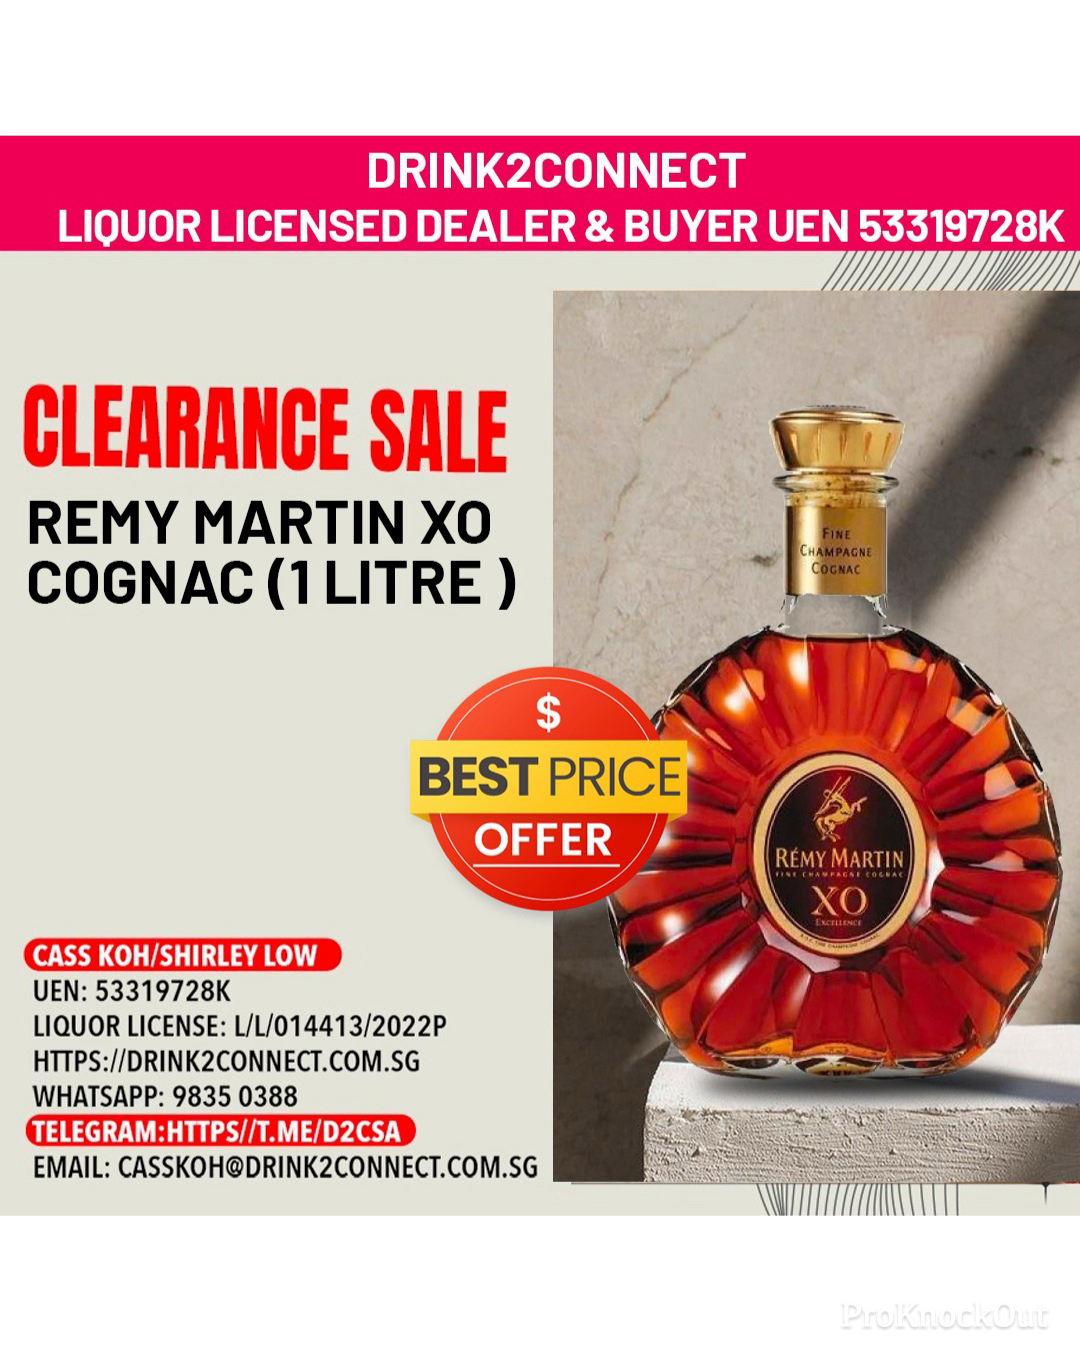 1 Litre Remy Martin XO Cognac/Cognac Sale Online/Cognac Price Online